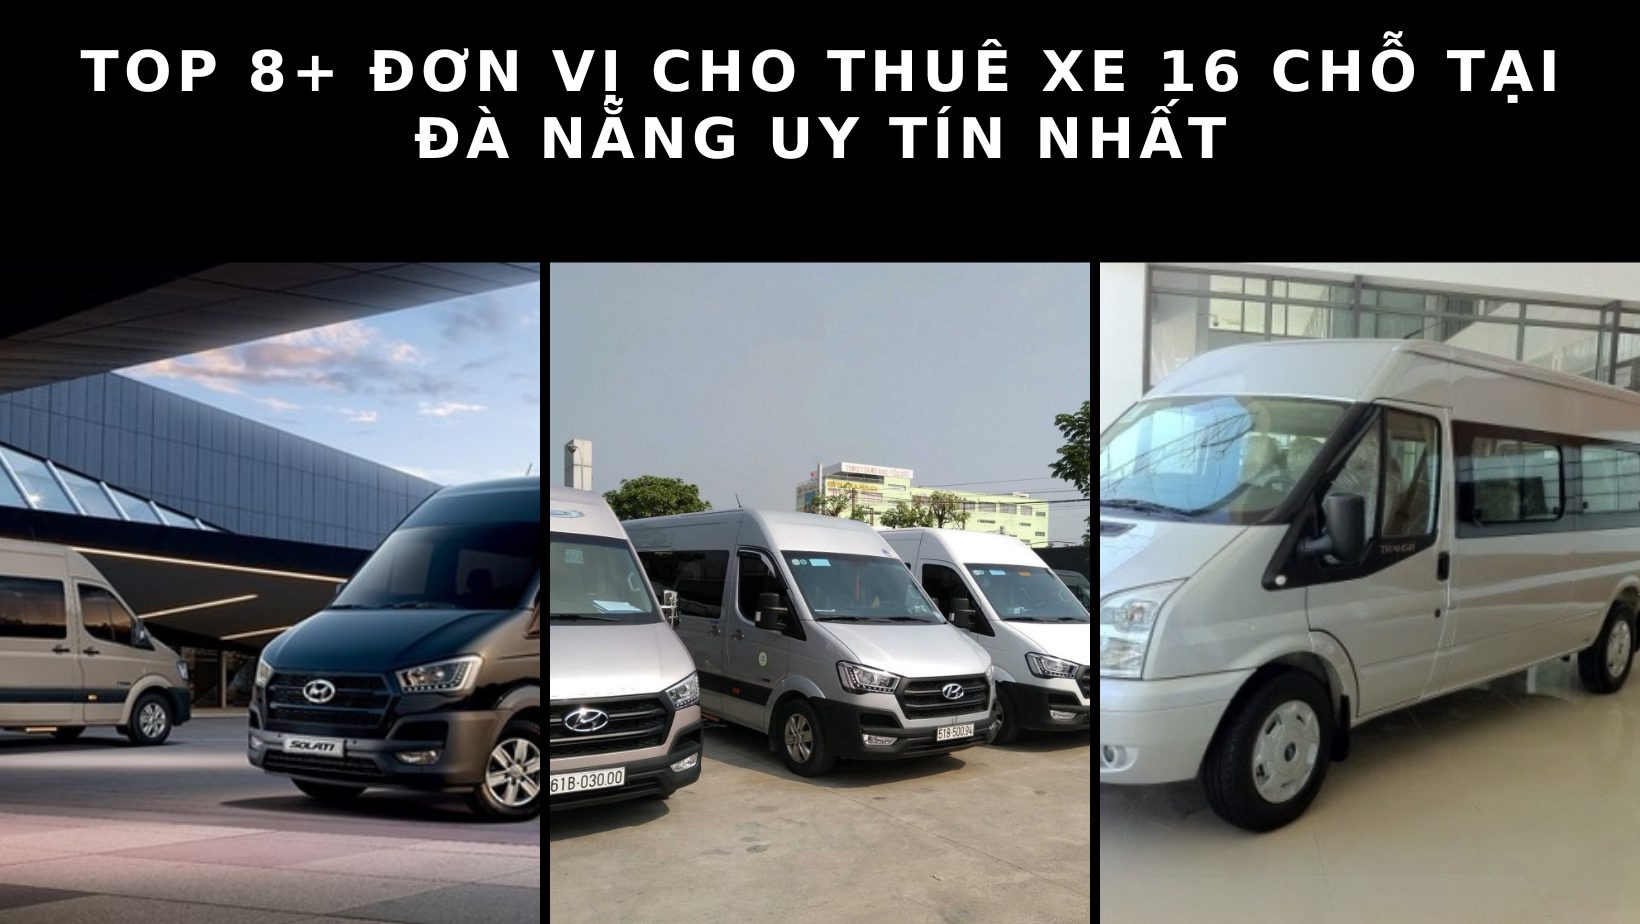 Top 8+ đơn vị cho thuê xe 16 chỗ tại Đà Nẵng uy tín nhất